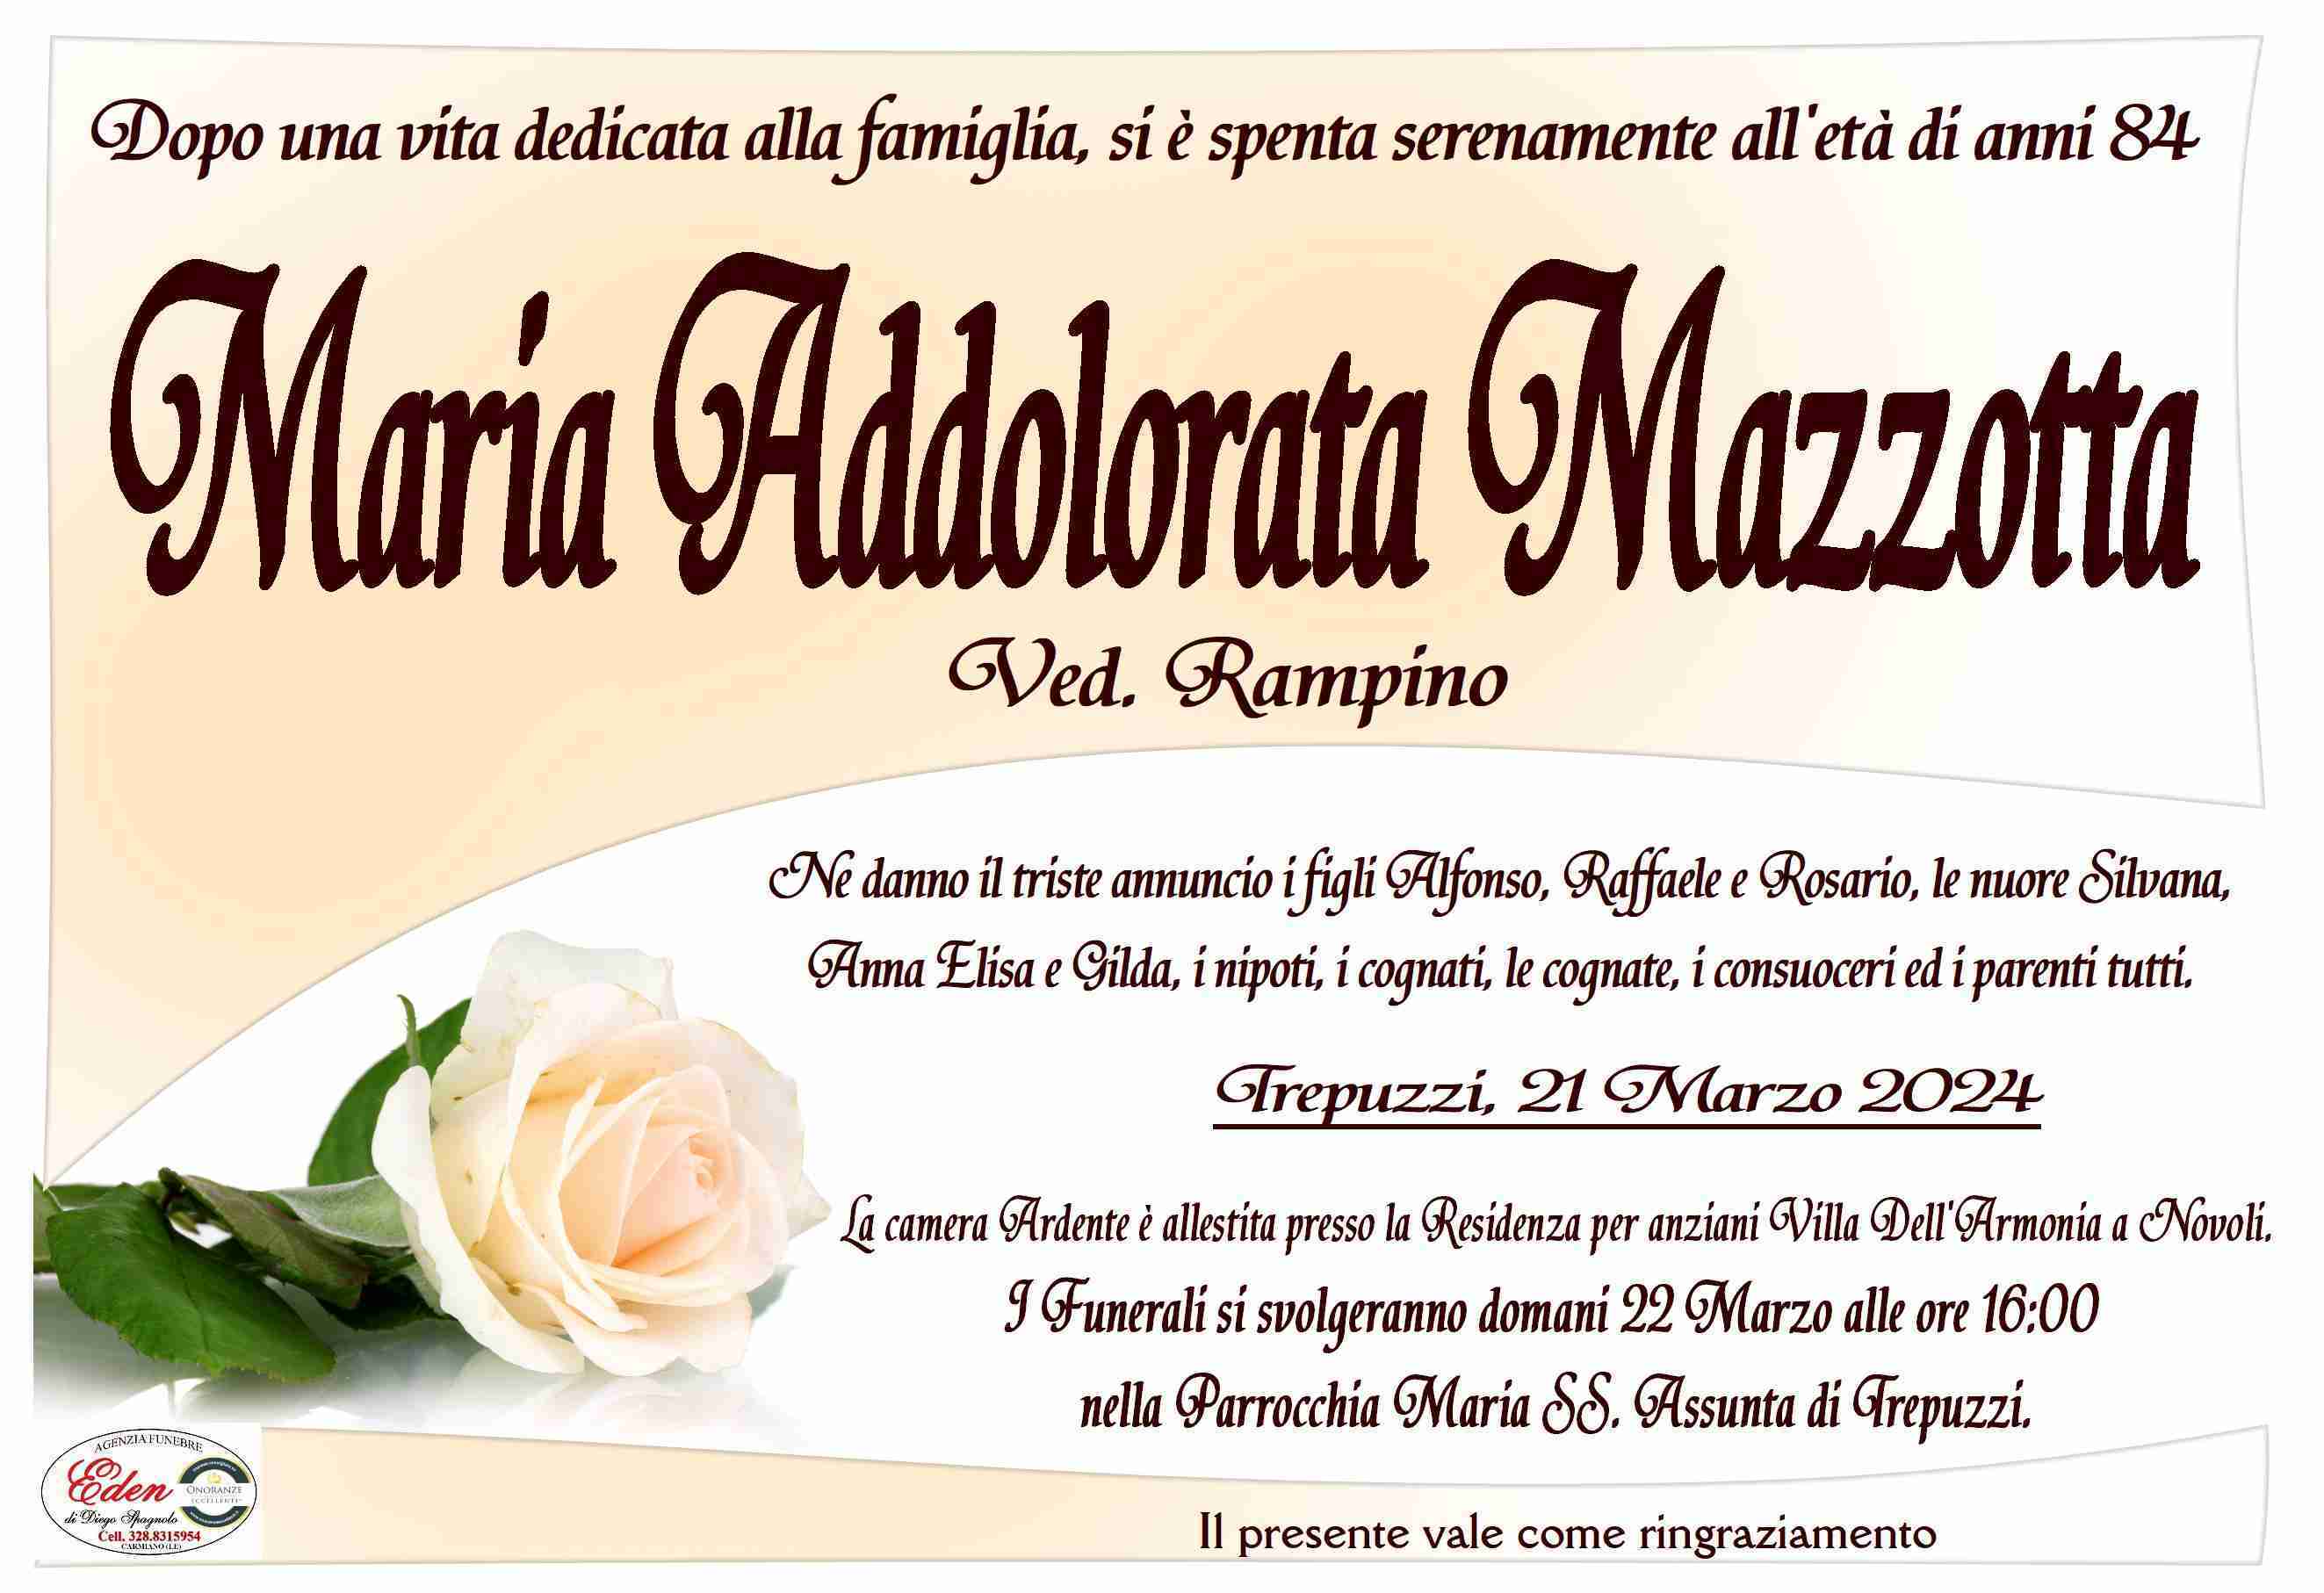 Maria Addolorata Mazzotta